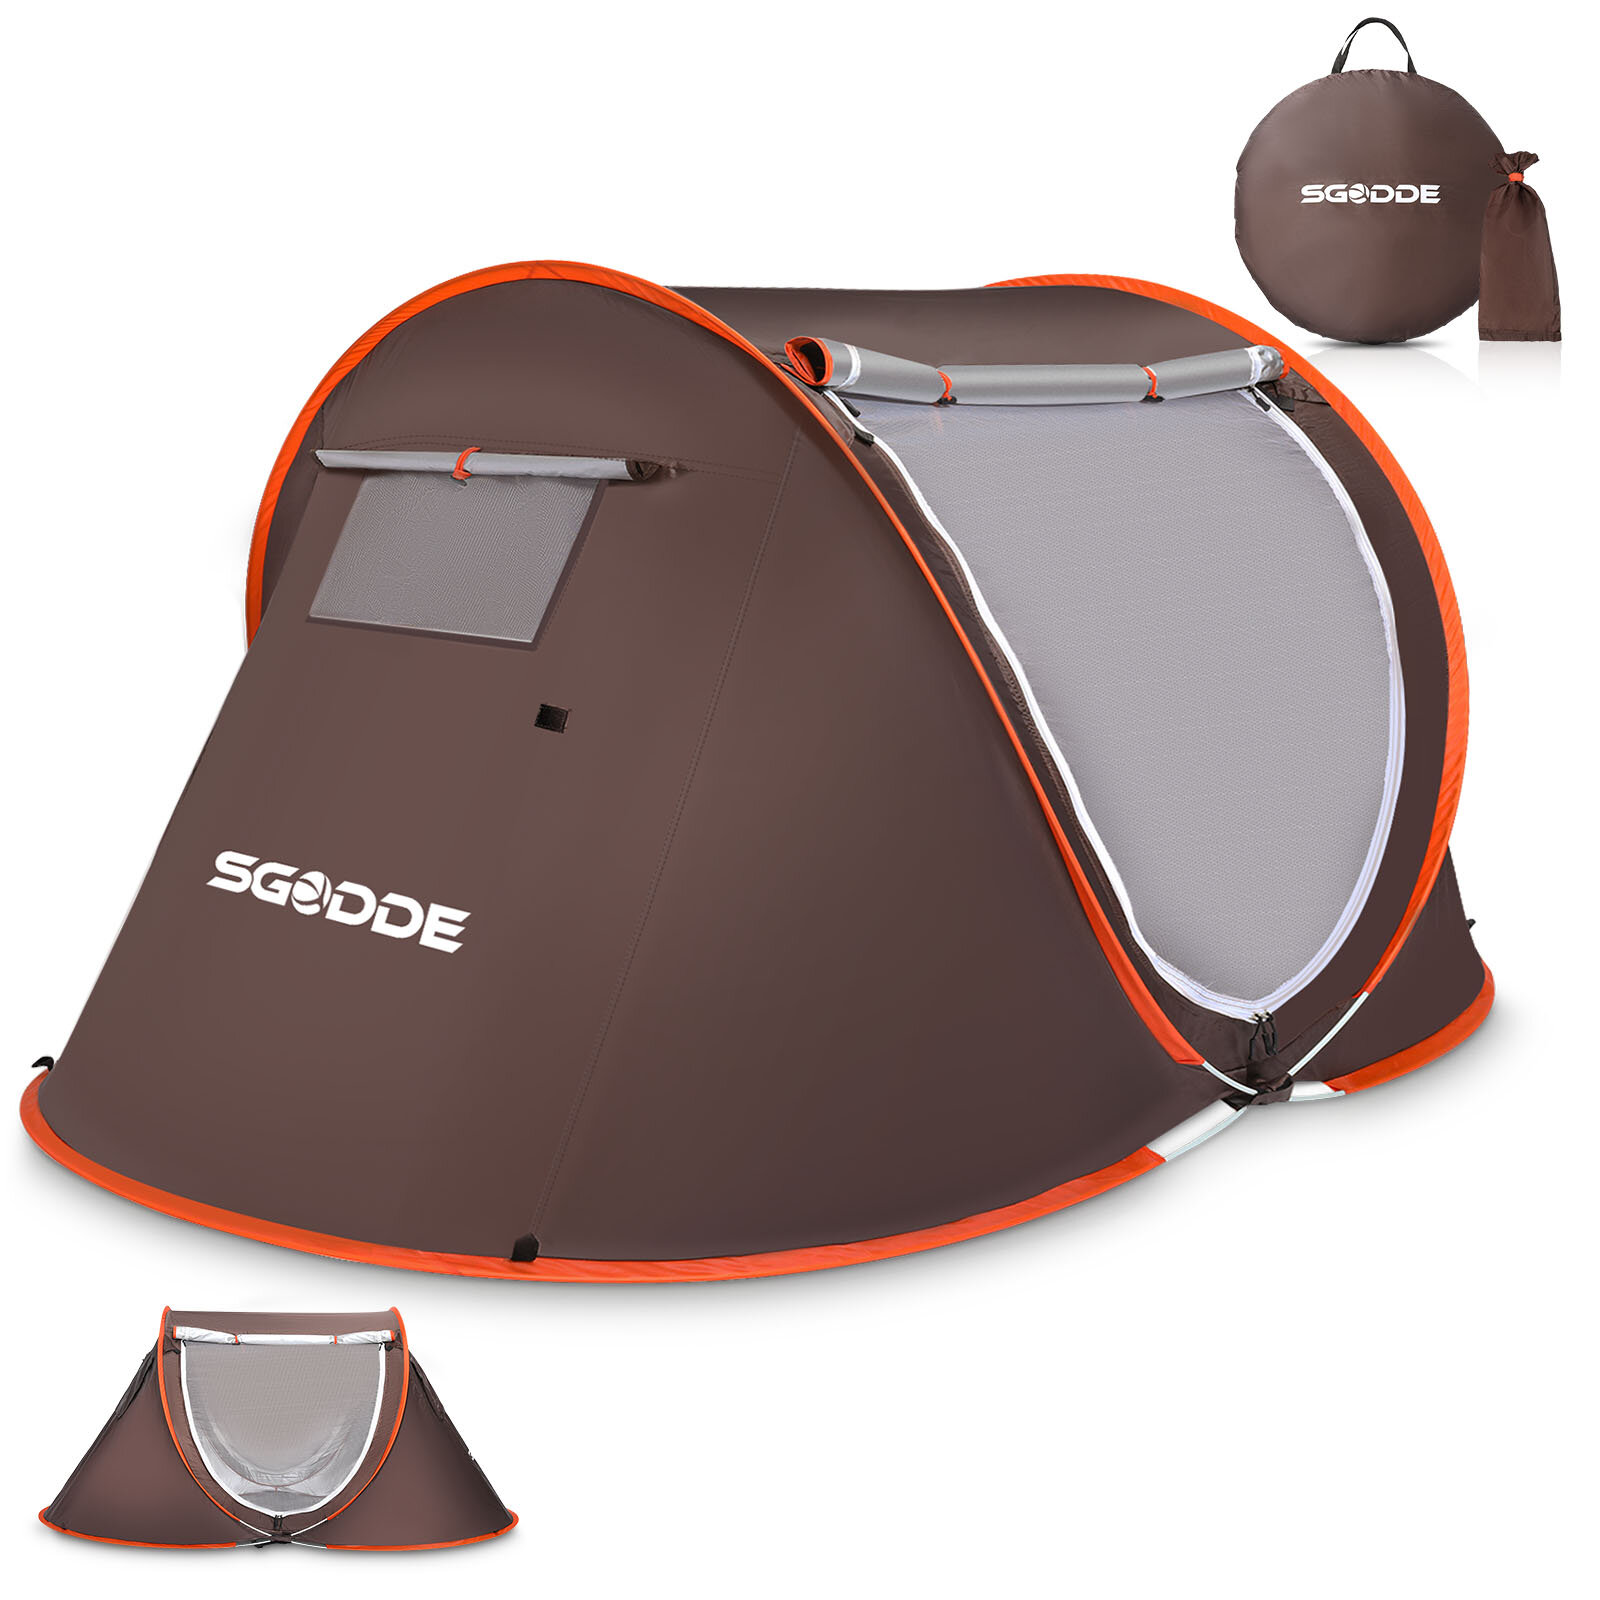 СГОДДЭ палатка для 2-3 человек автоматическая Кемпинг палатка Анти UV тент палатка Водонепроницаемы На открытом воздухе Sunshelter